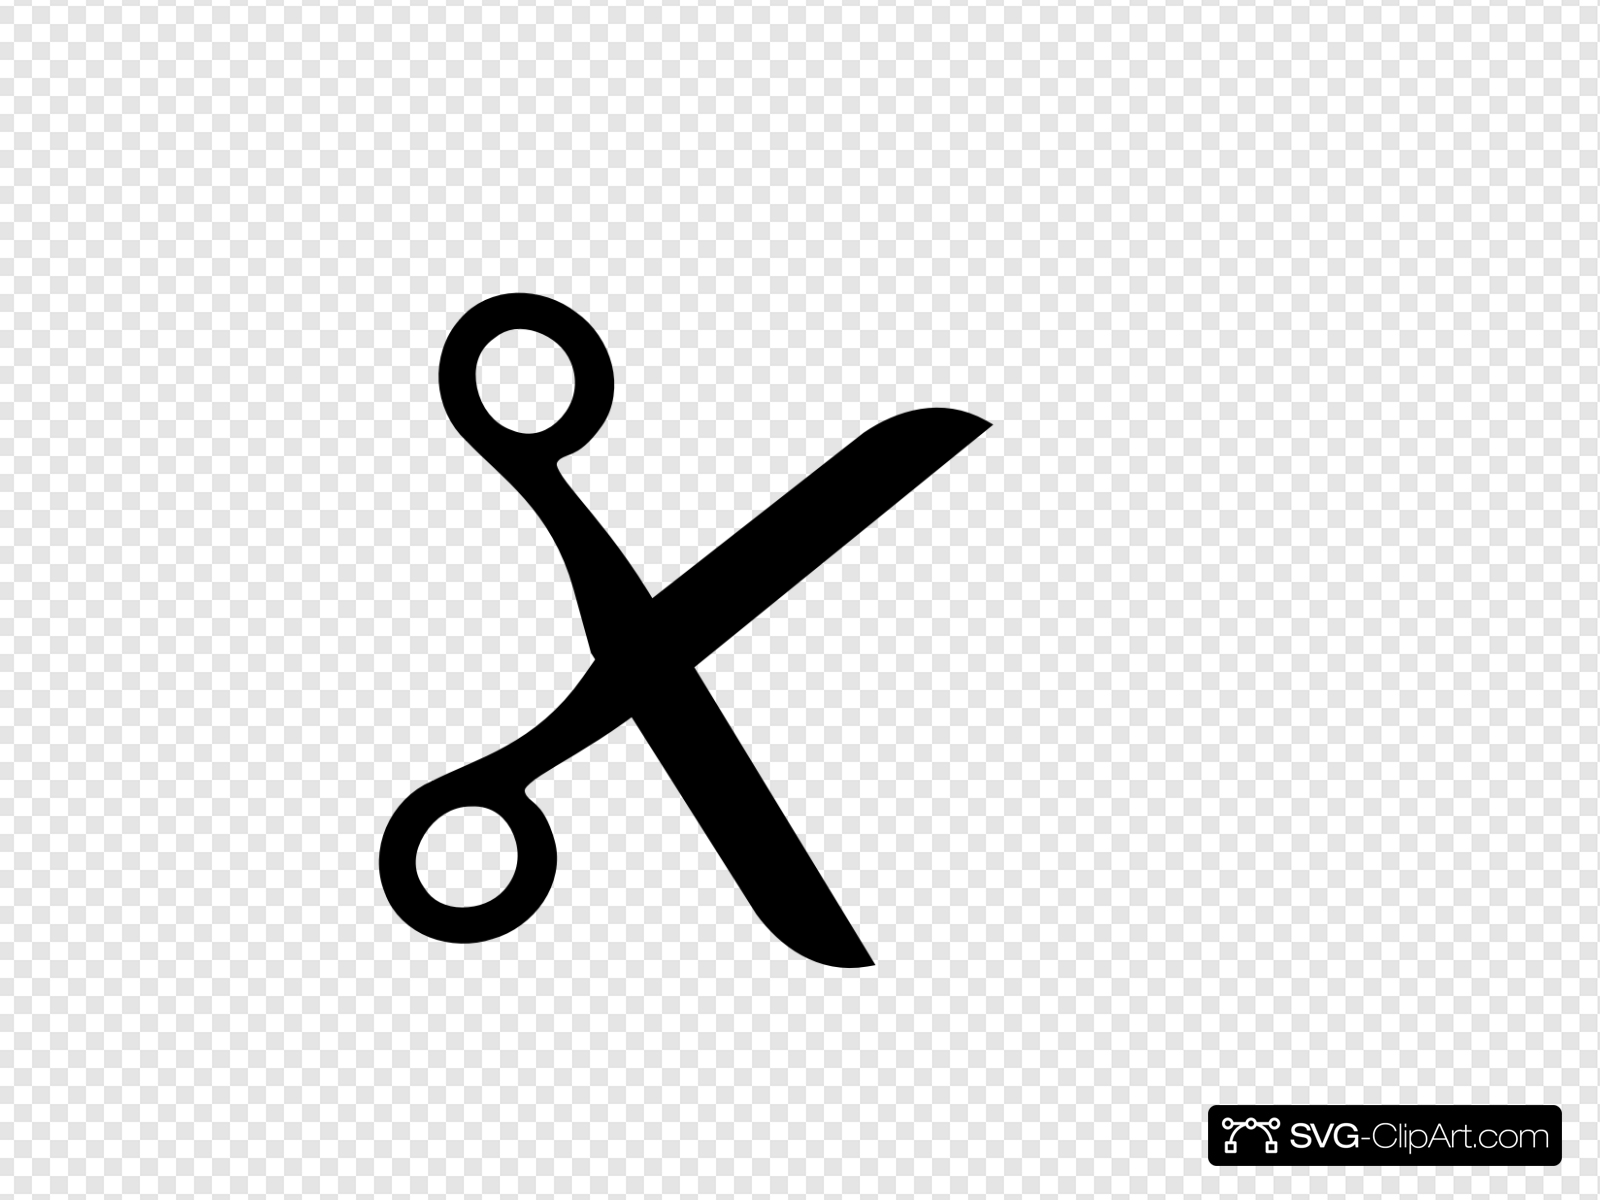 Scissor K Clip art, Icon and SVG.